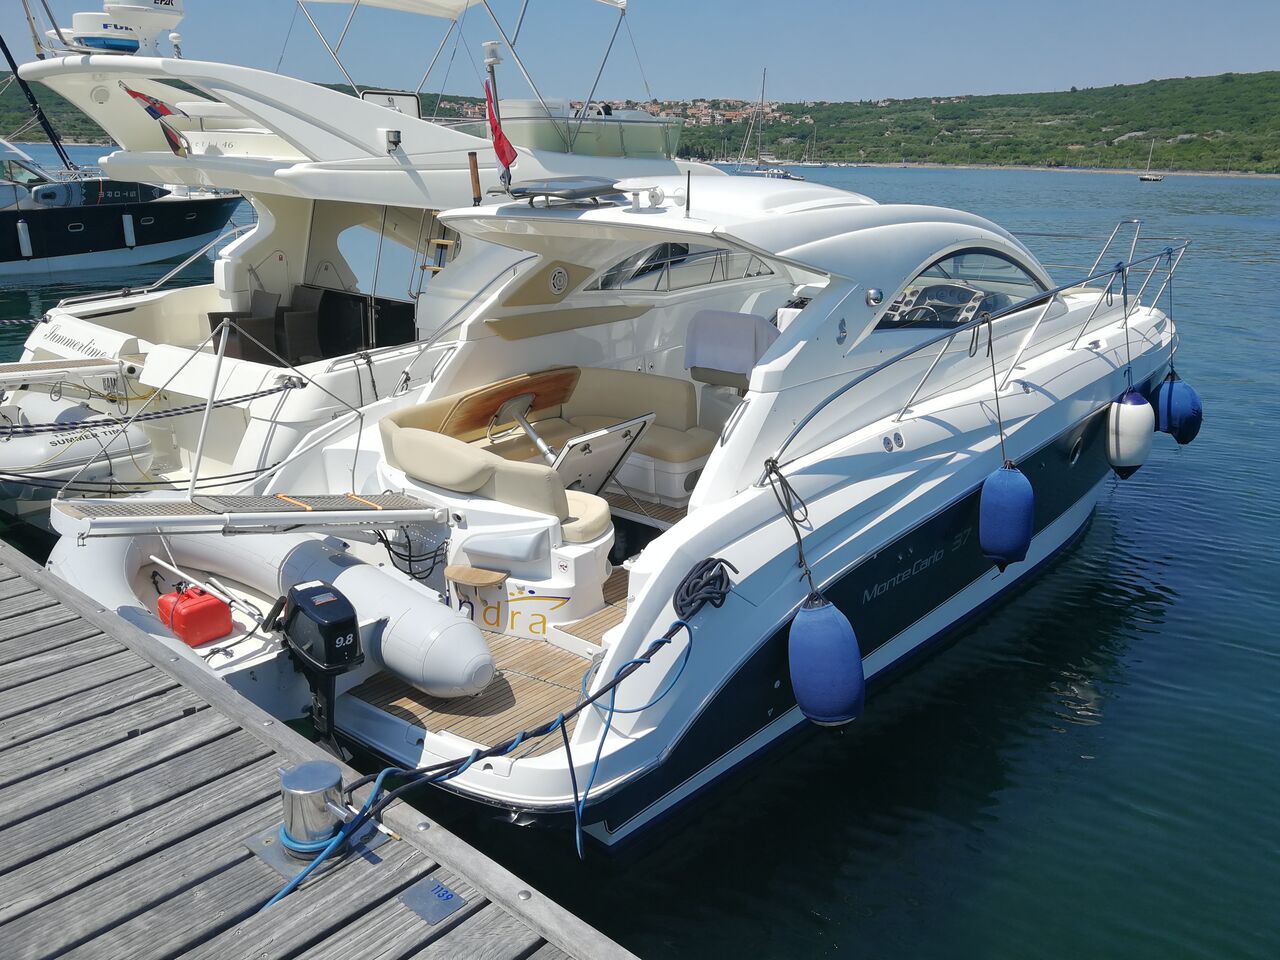 Bénéteau Monte Carlo 37 HT (powerboat) for sale